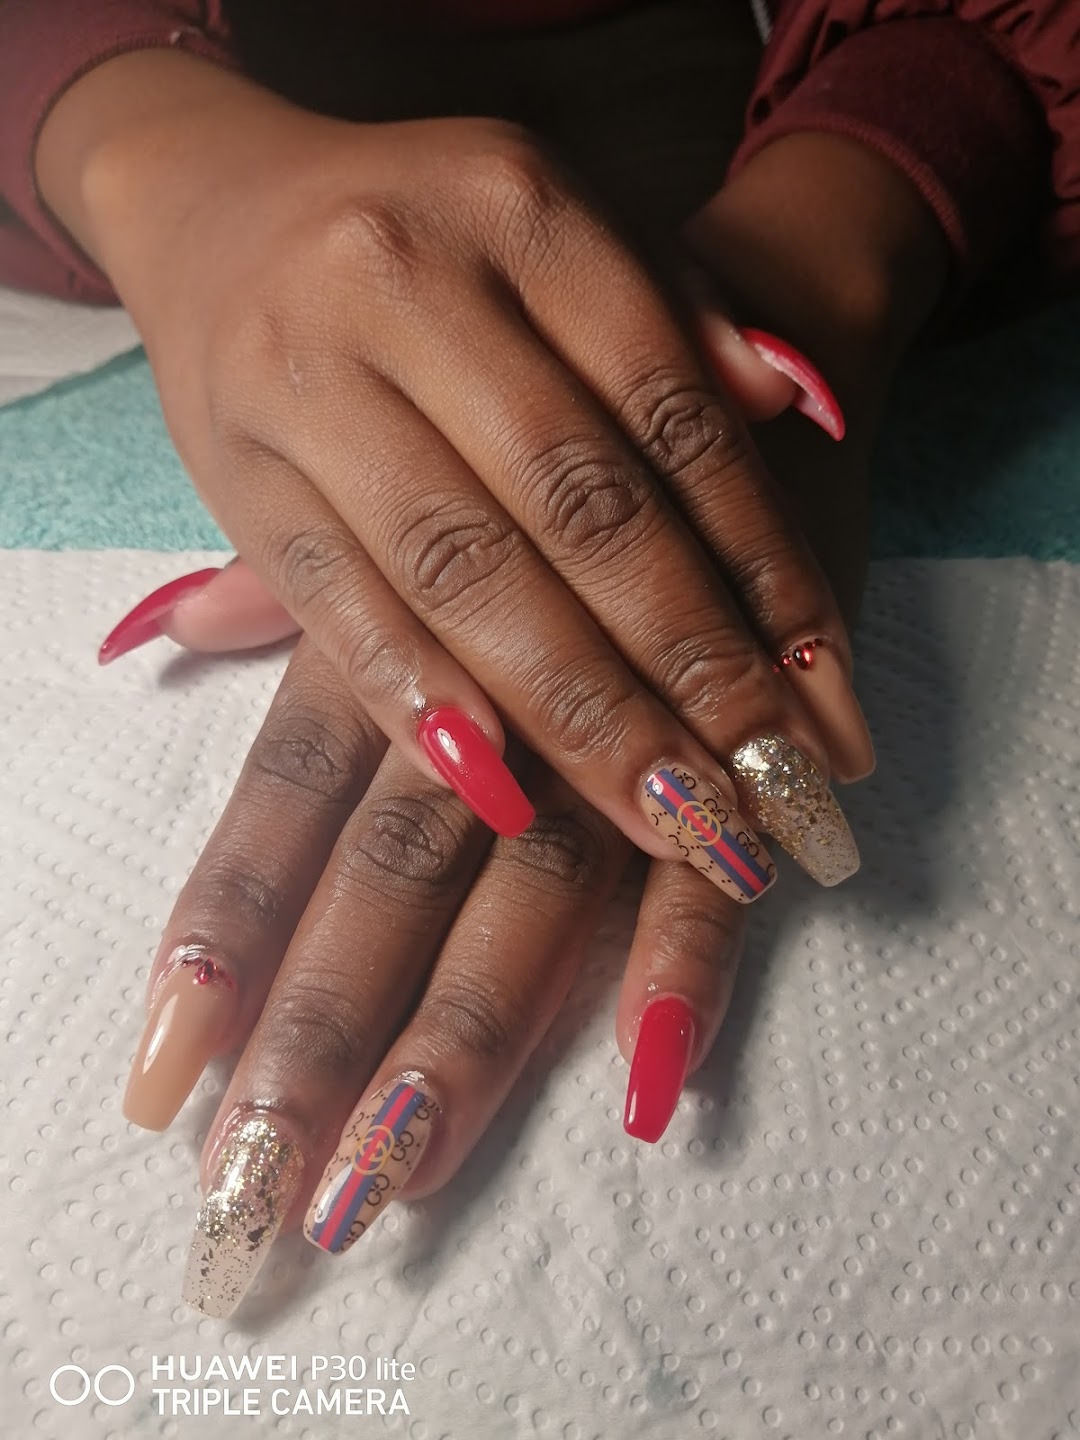 Mpho Resego nails clinique